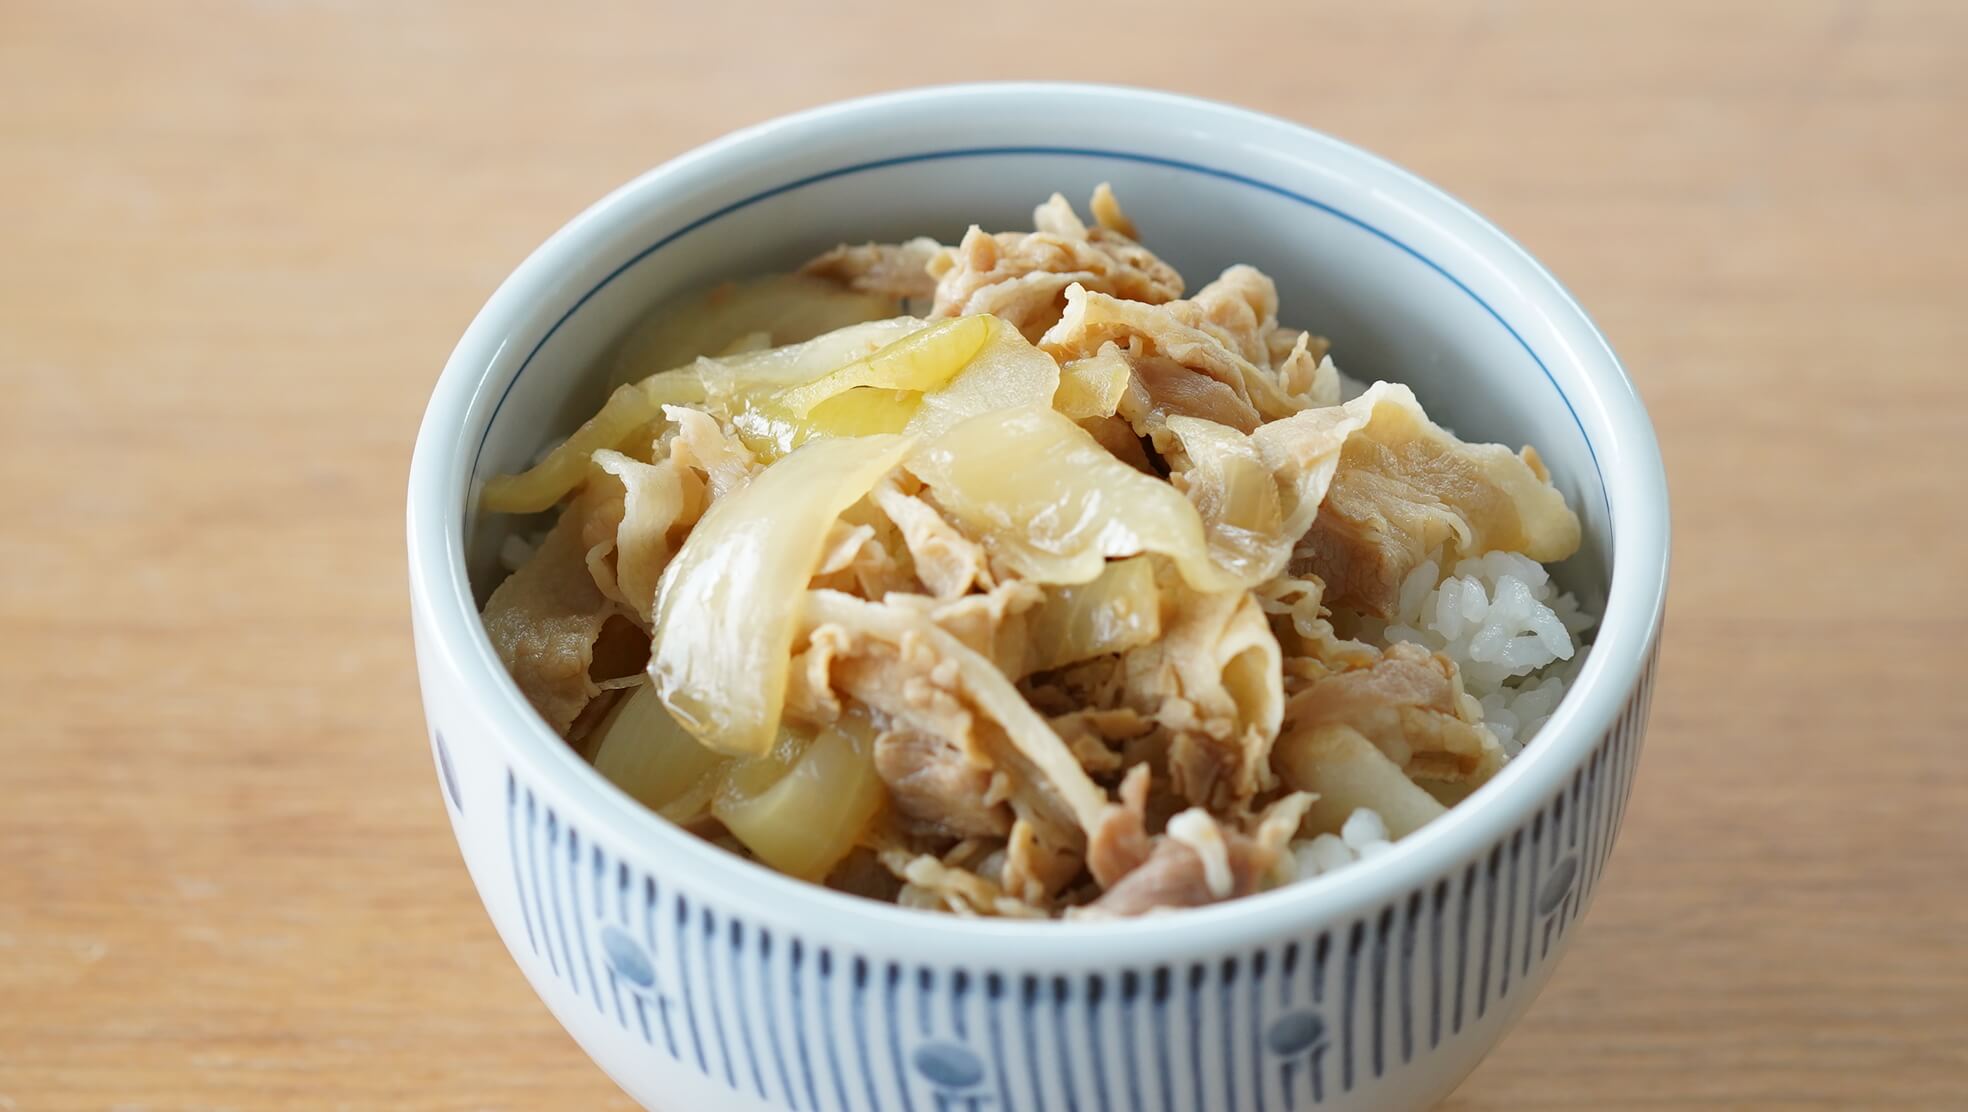 吉野家の冷凍食品「豚丼」を皿に盛り付けた写真